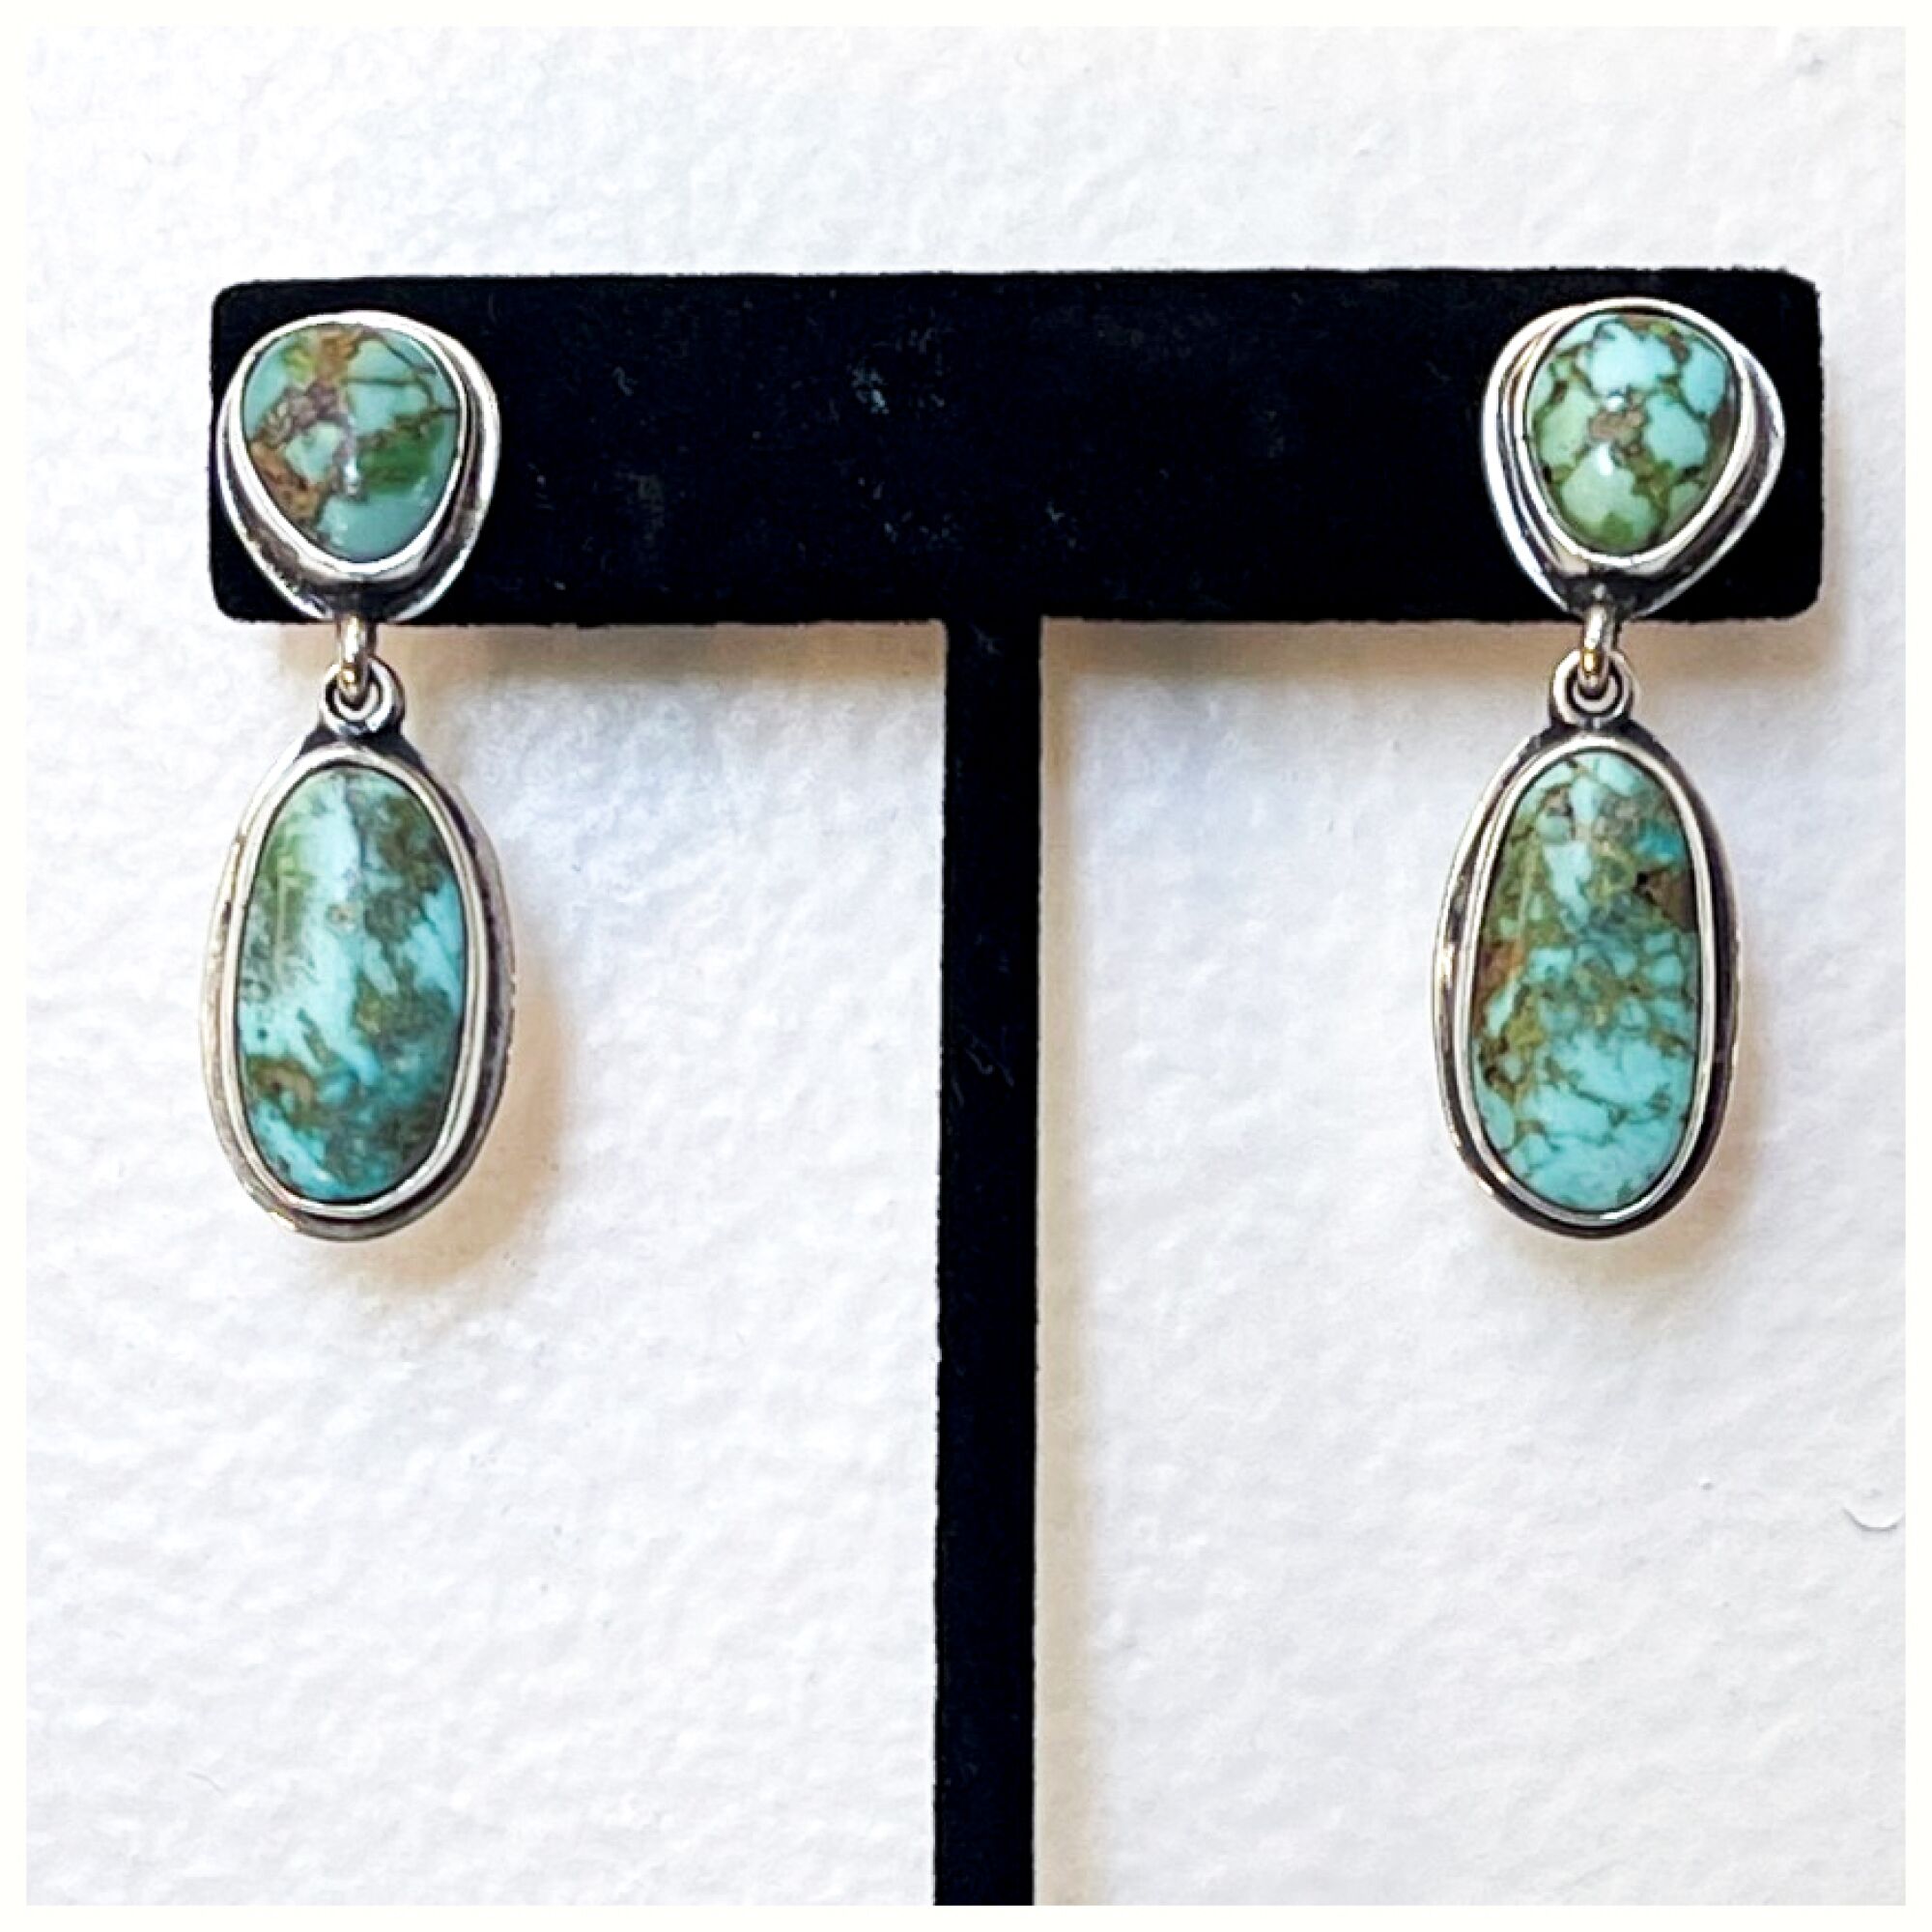 Turquoise earrings from Federico Jimenez